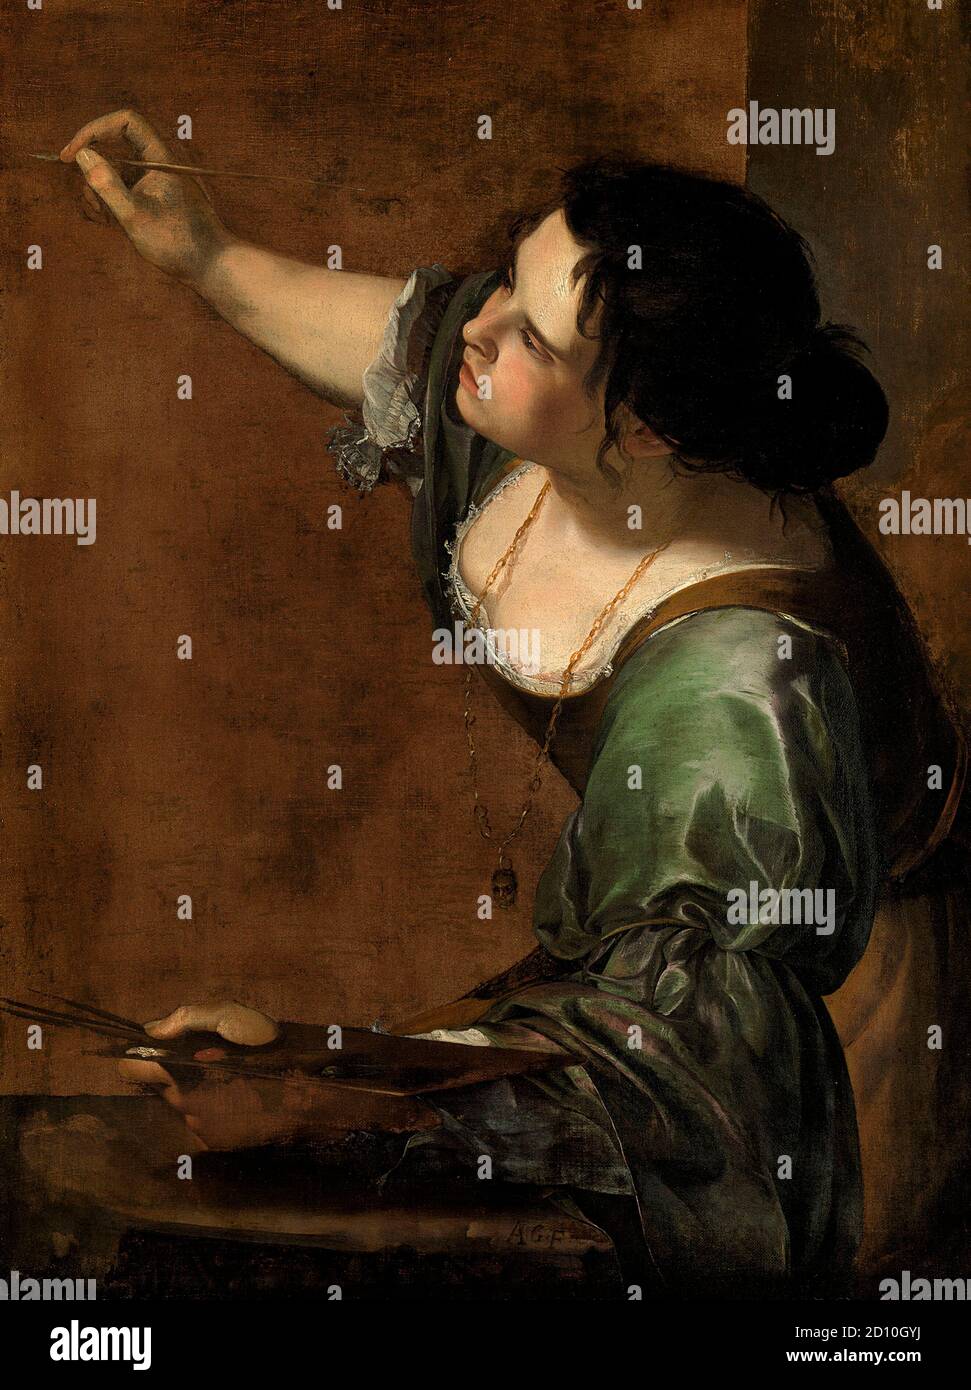 Artemisia Gentileschi, autorretrato como la Allegoría de la pintura, (1593 – 1656) pintor barroco italiano, Foto de stock